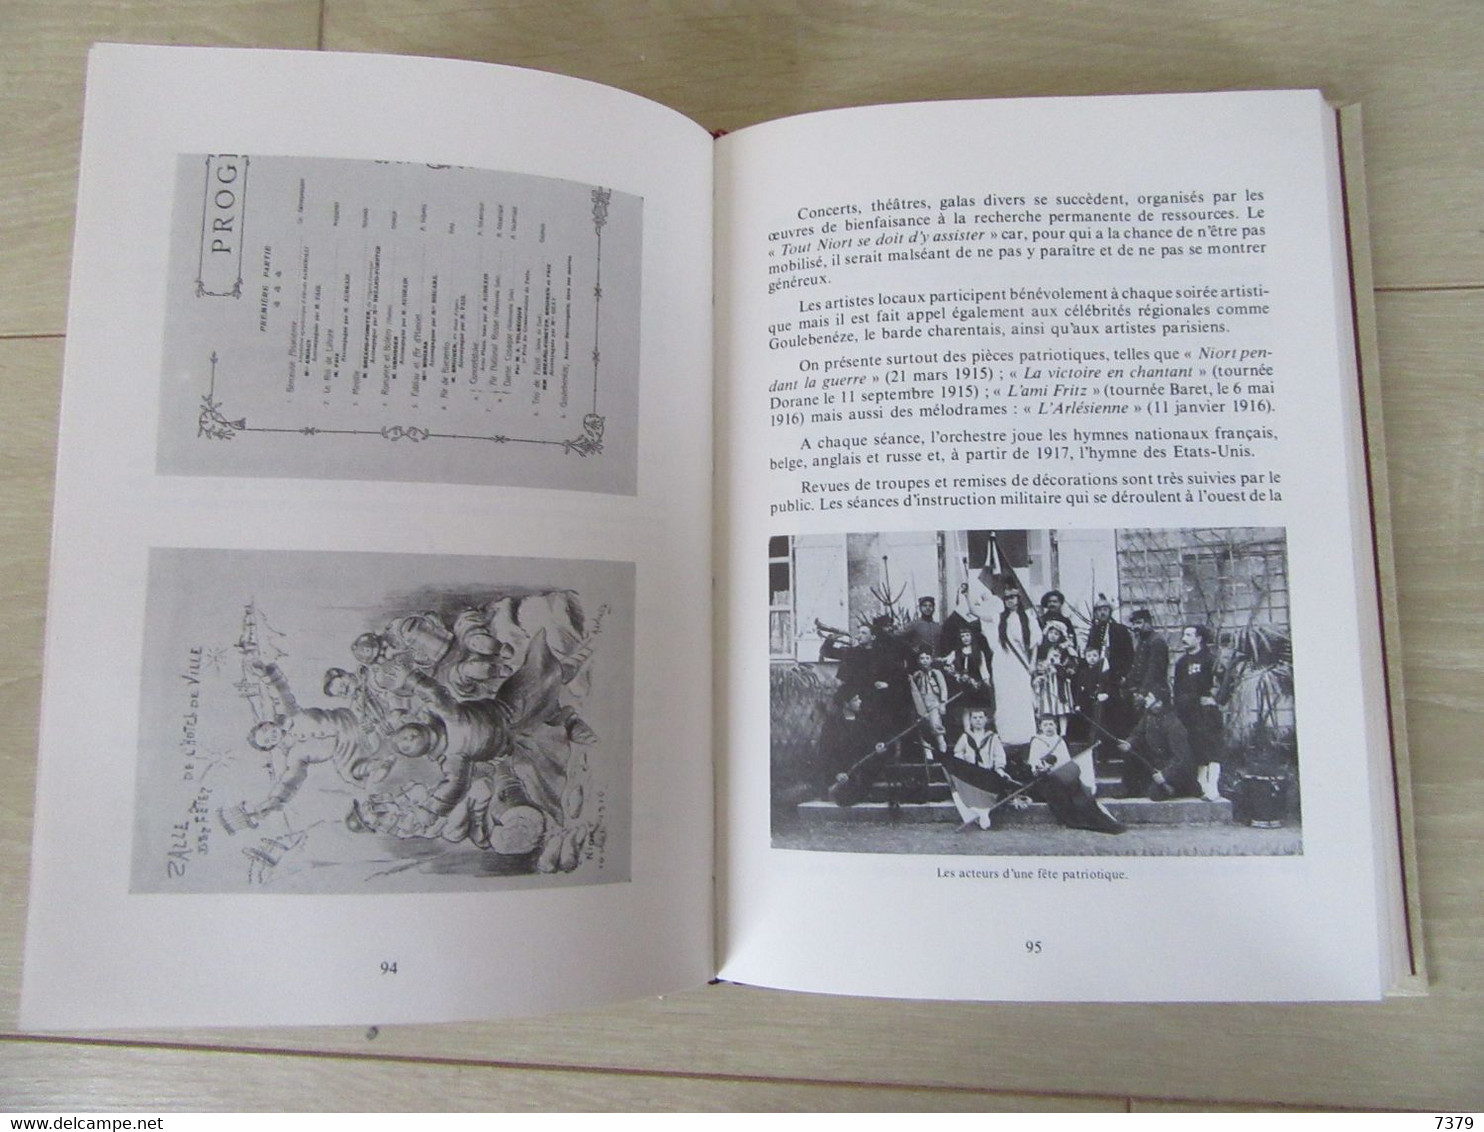 NIORT DE 1914 à 1925 ANDRE TEXIER EDITIONS DU TERROIR - Poitou-Charentes